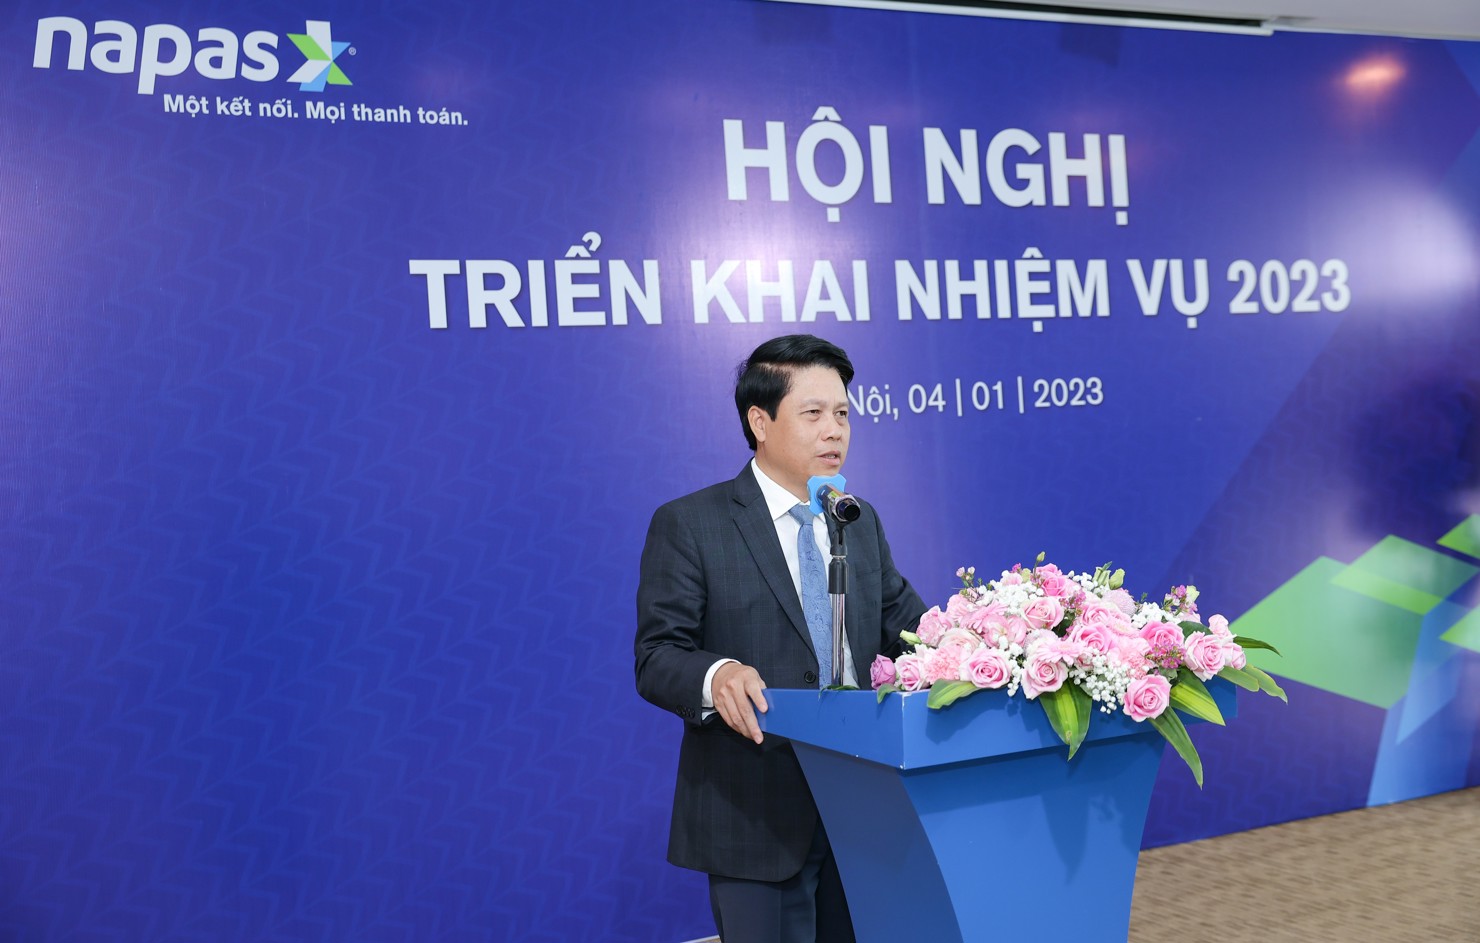 Phó Thống đốc Ngân hàng Nhà nước Phạm Tiến Dũng phát biểu chỉ đạo tại Hội nghị triển khai nhiệm vụ 2023 của NAPAS.